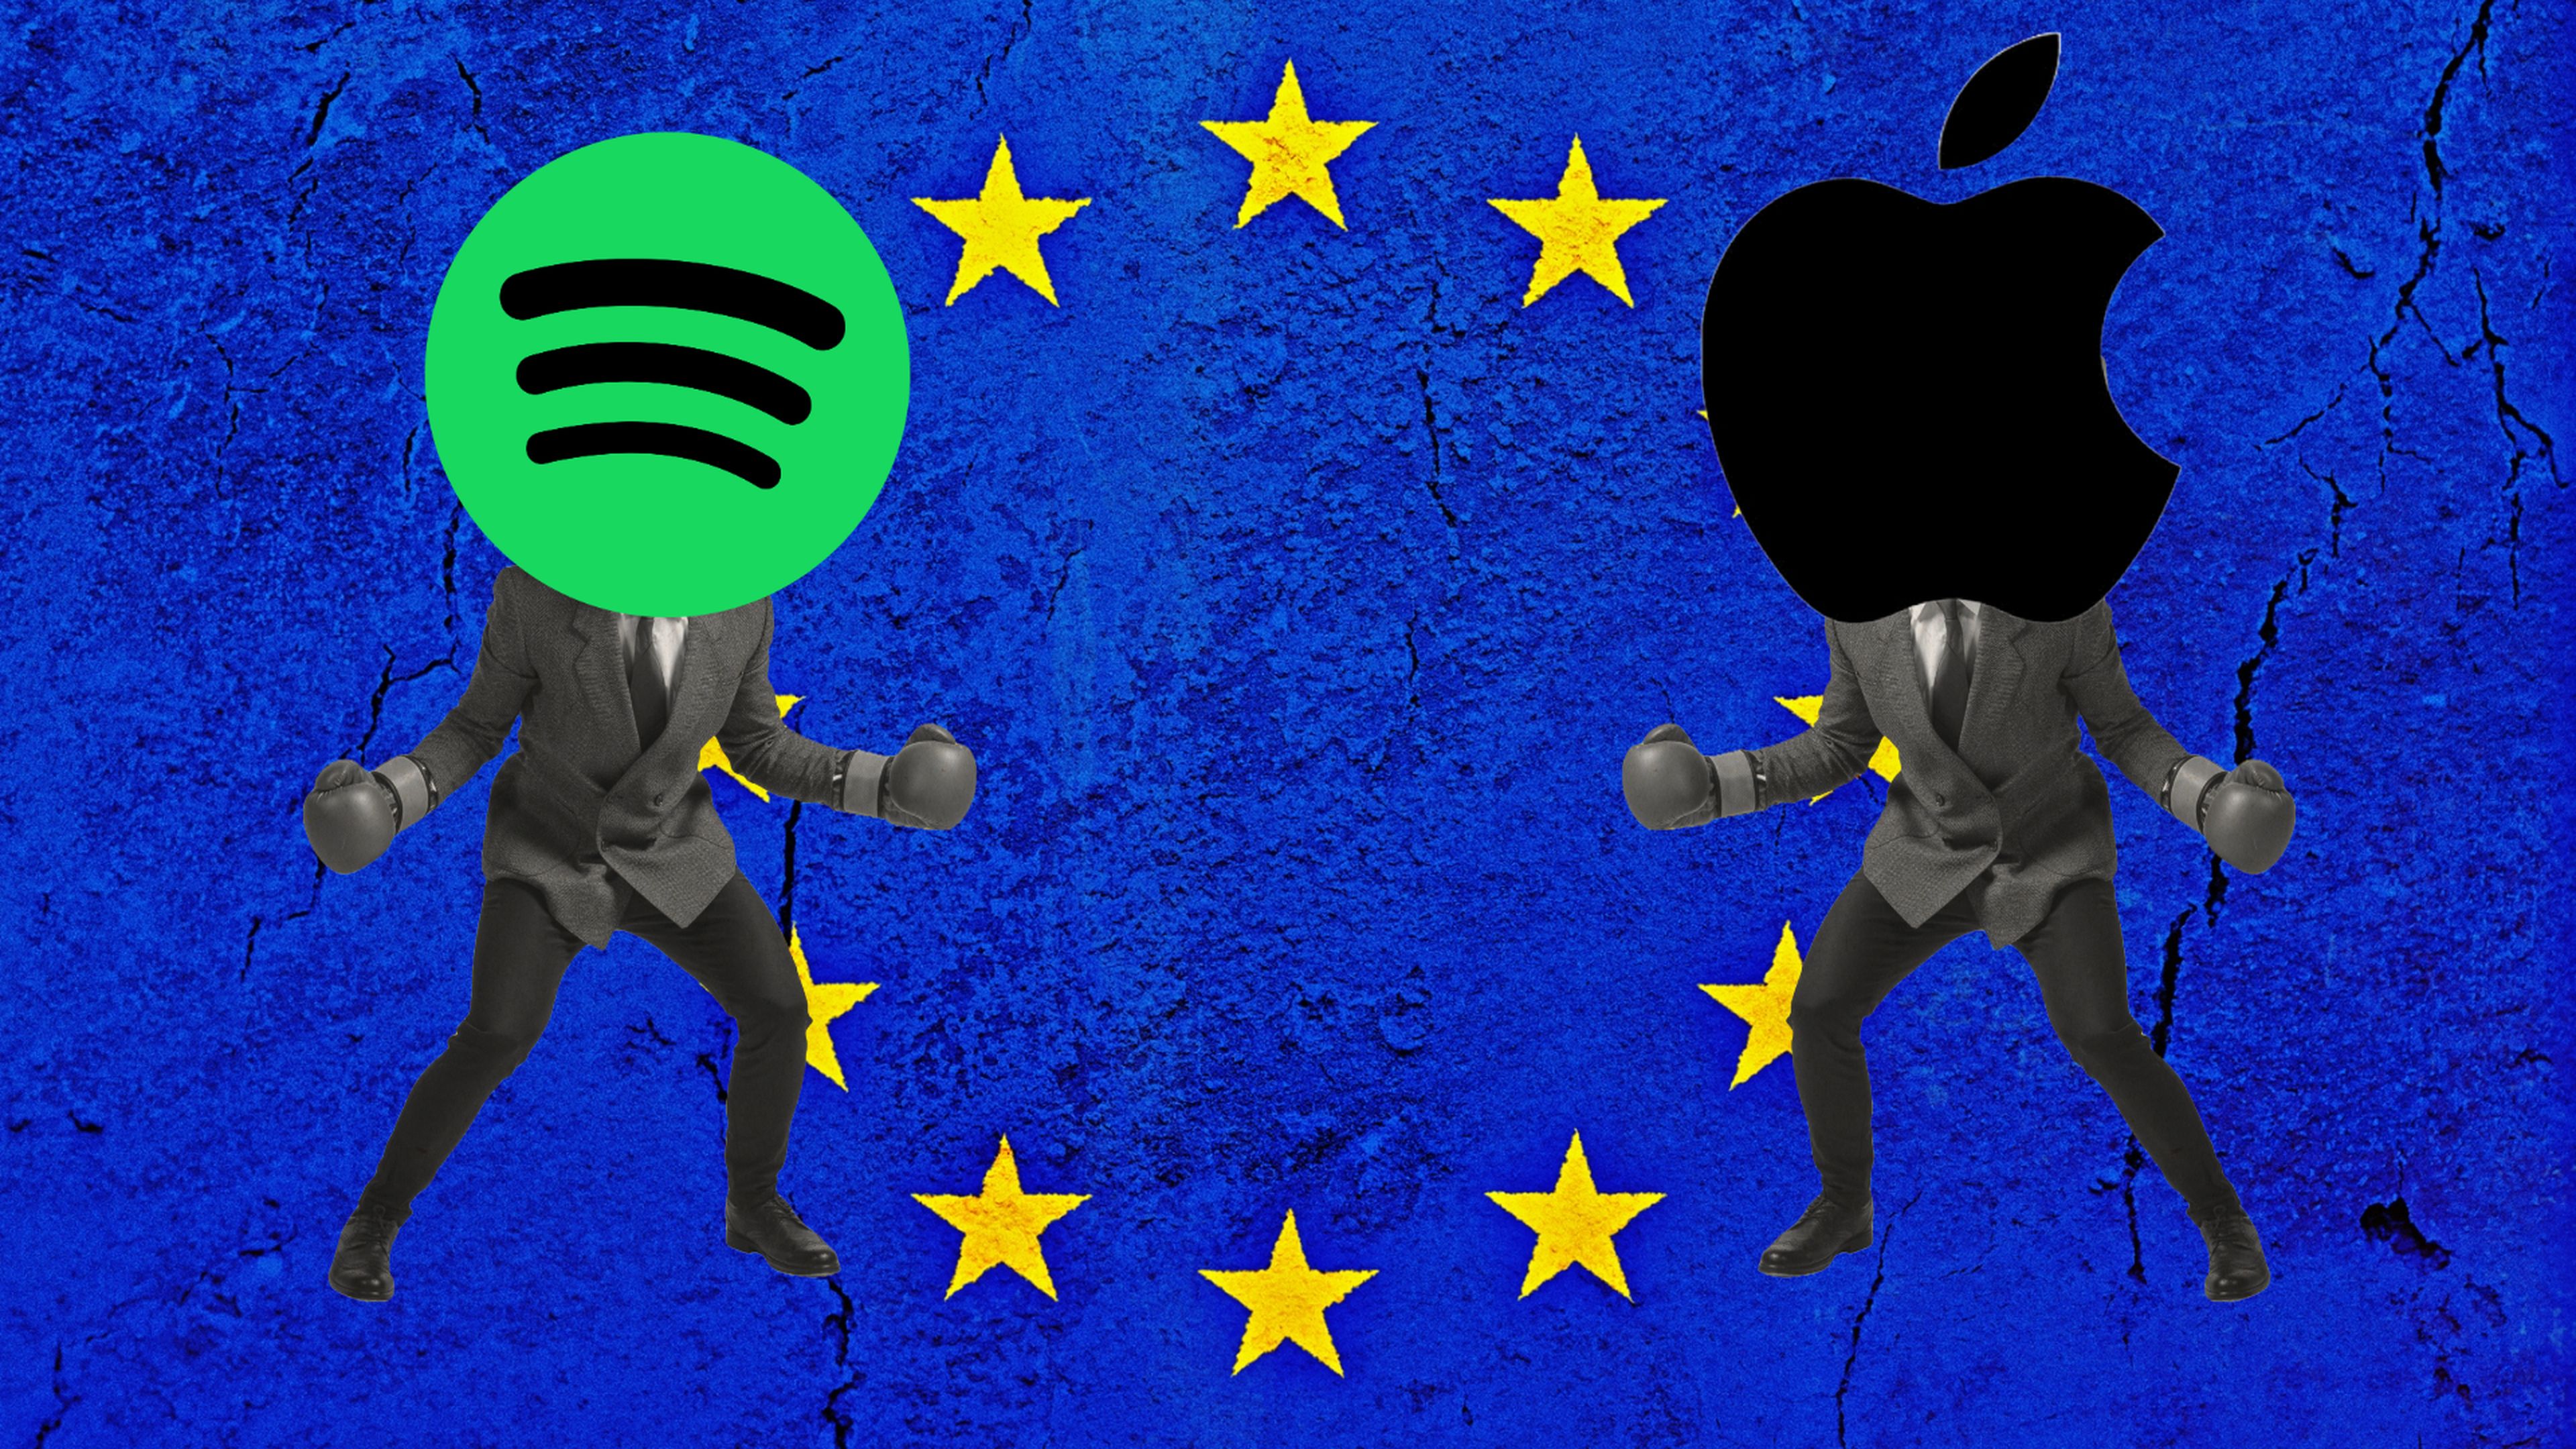 Spotify vs Apple Unión Europea DMA demanda monopolio competencia desleal